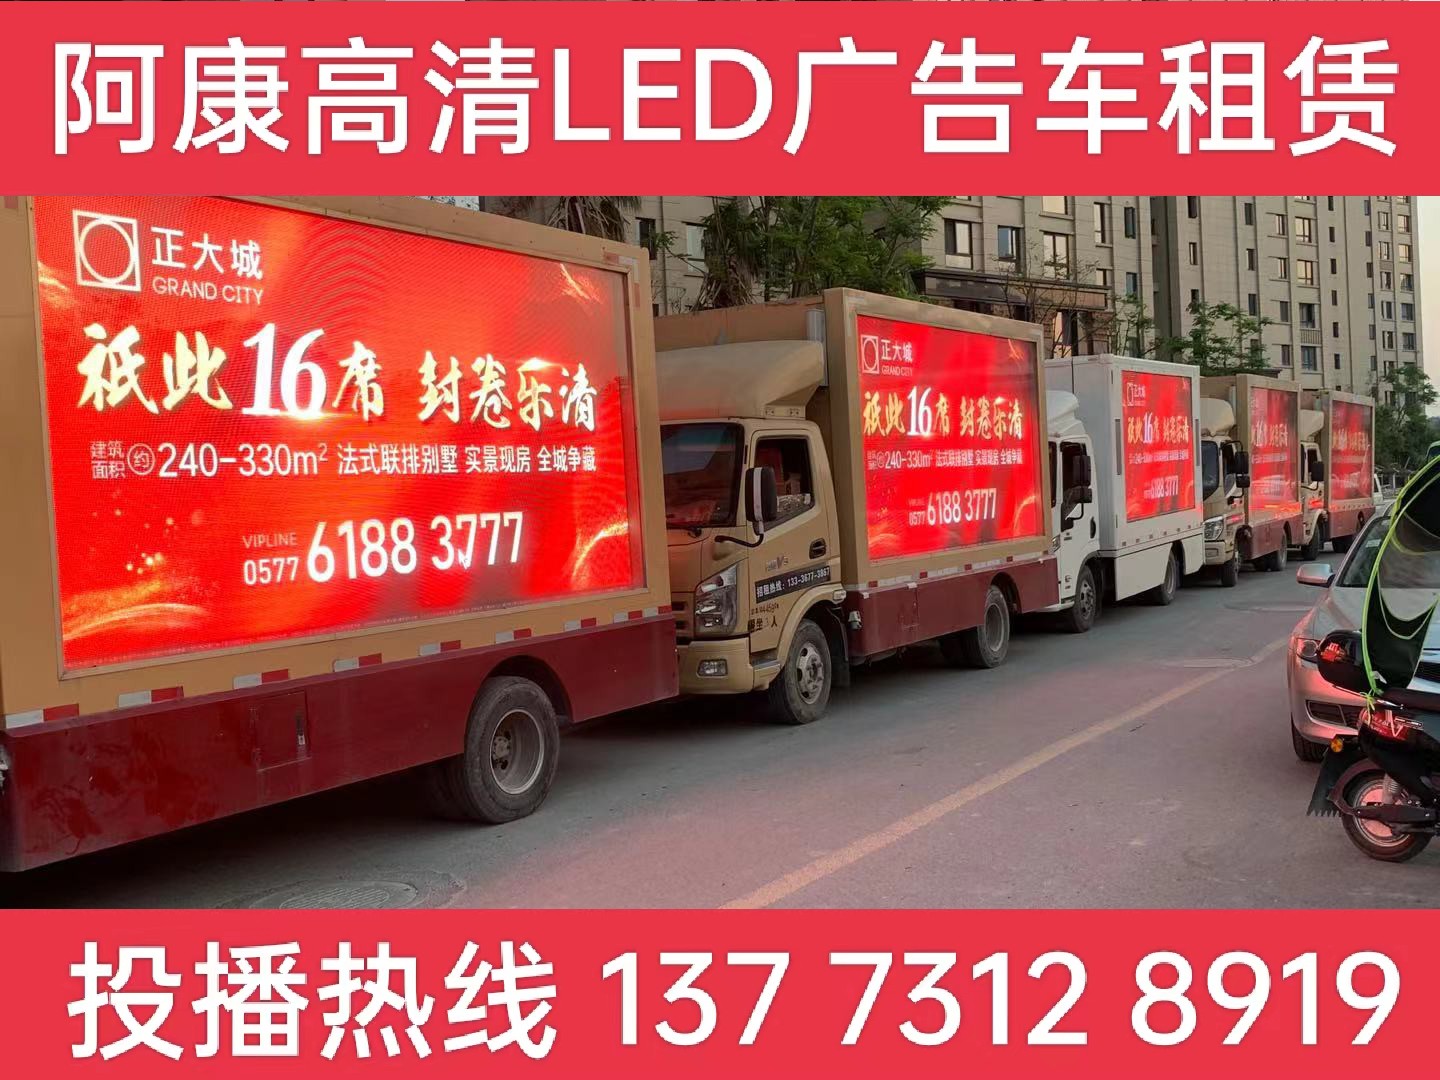 宜兴LED广告车出租